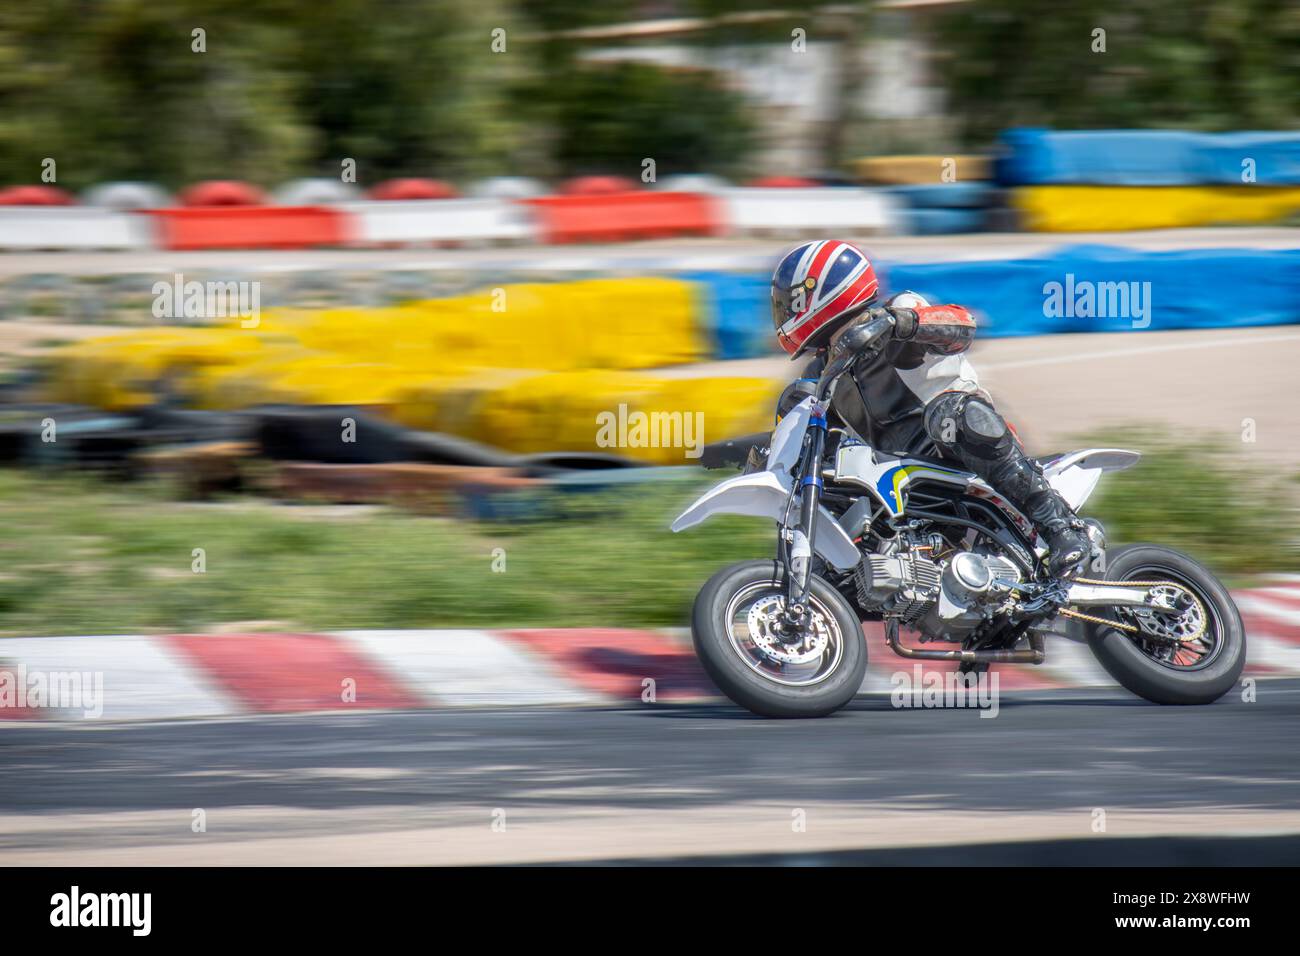 Le pilote de moto à pleine vitesse accélère sur une piste de course, capturé avec un flou de mouvement. Banque D'Images